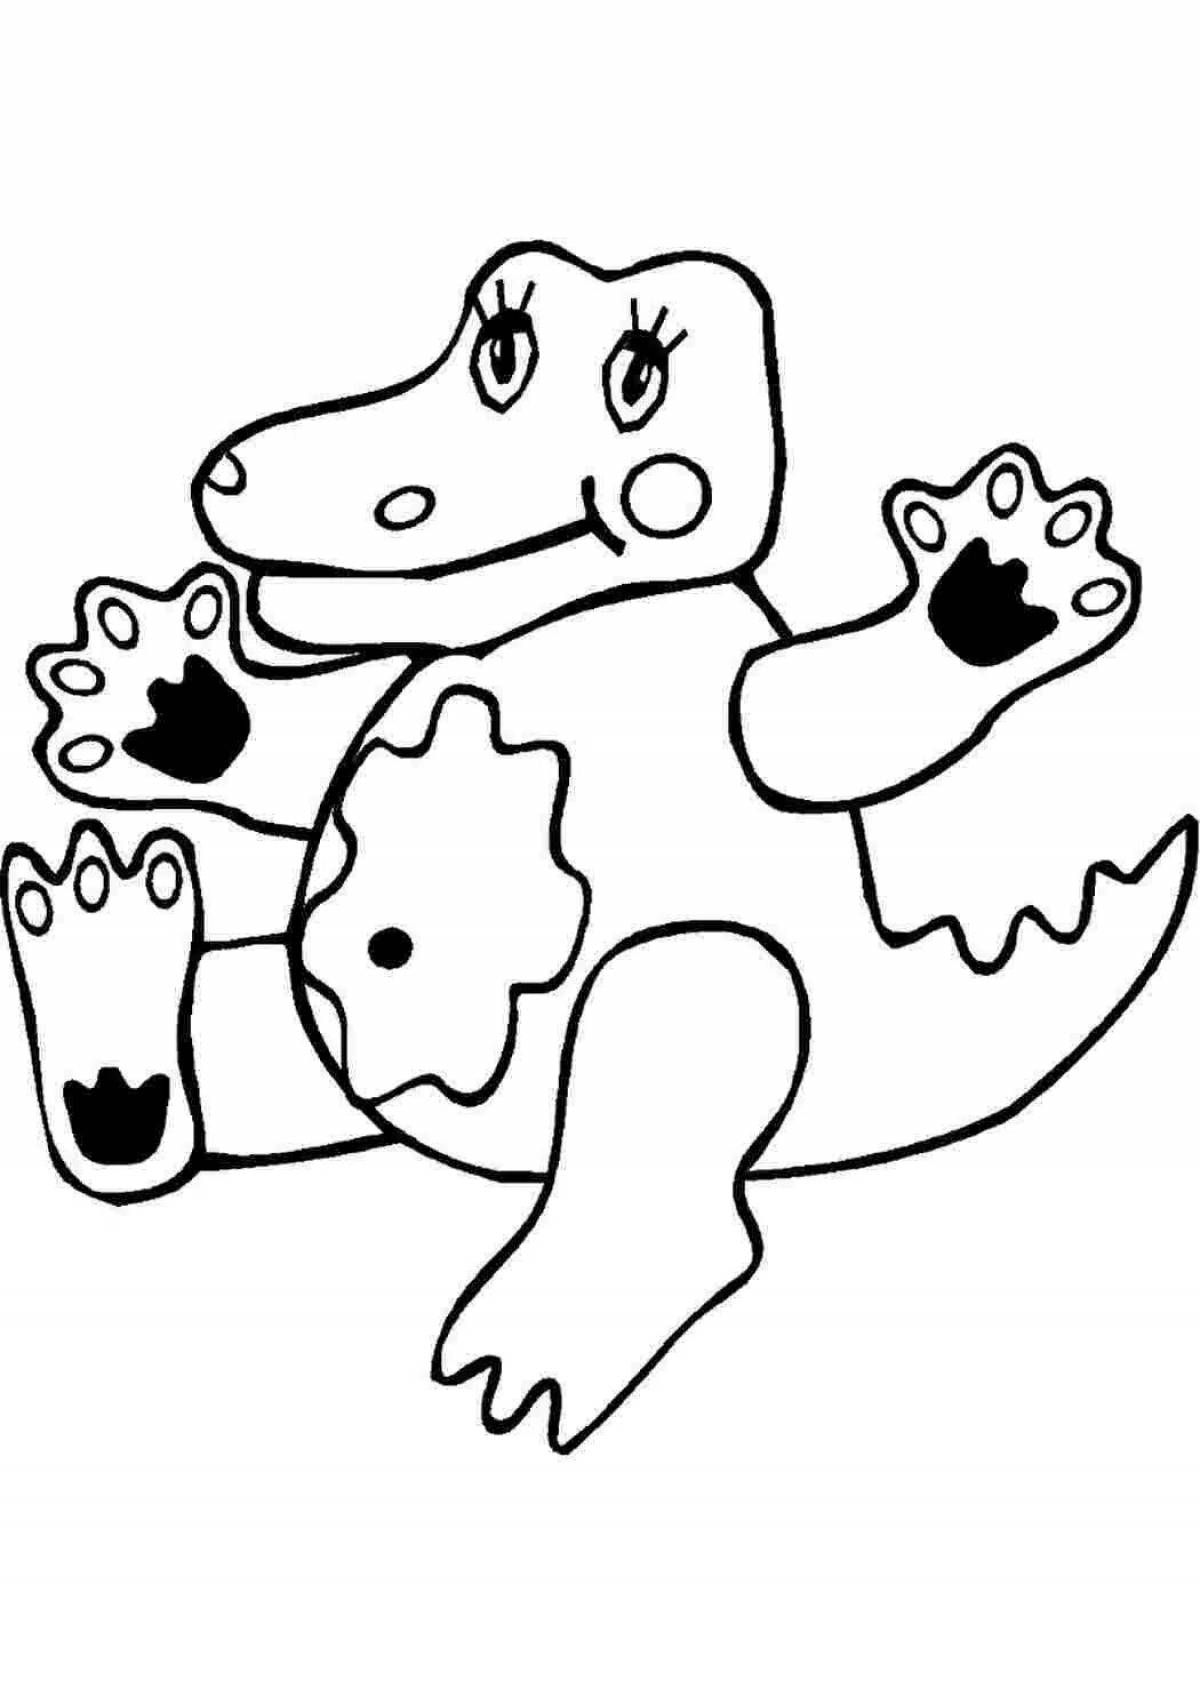 Яркая раскраска крокодил для детей 3-4 лет